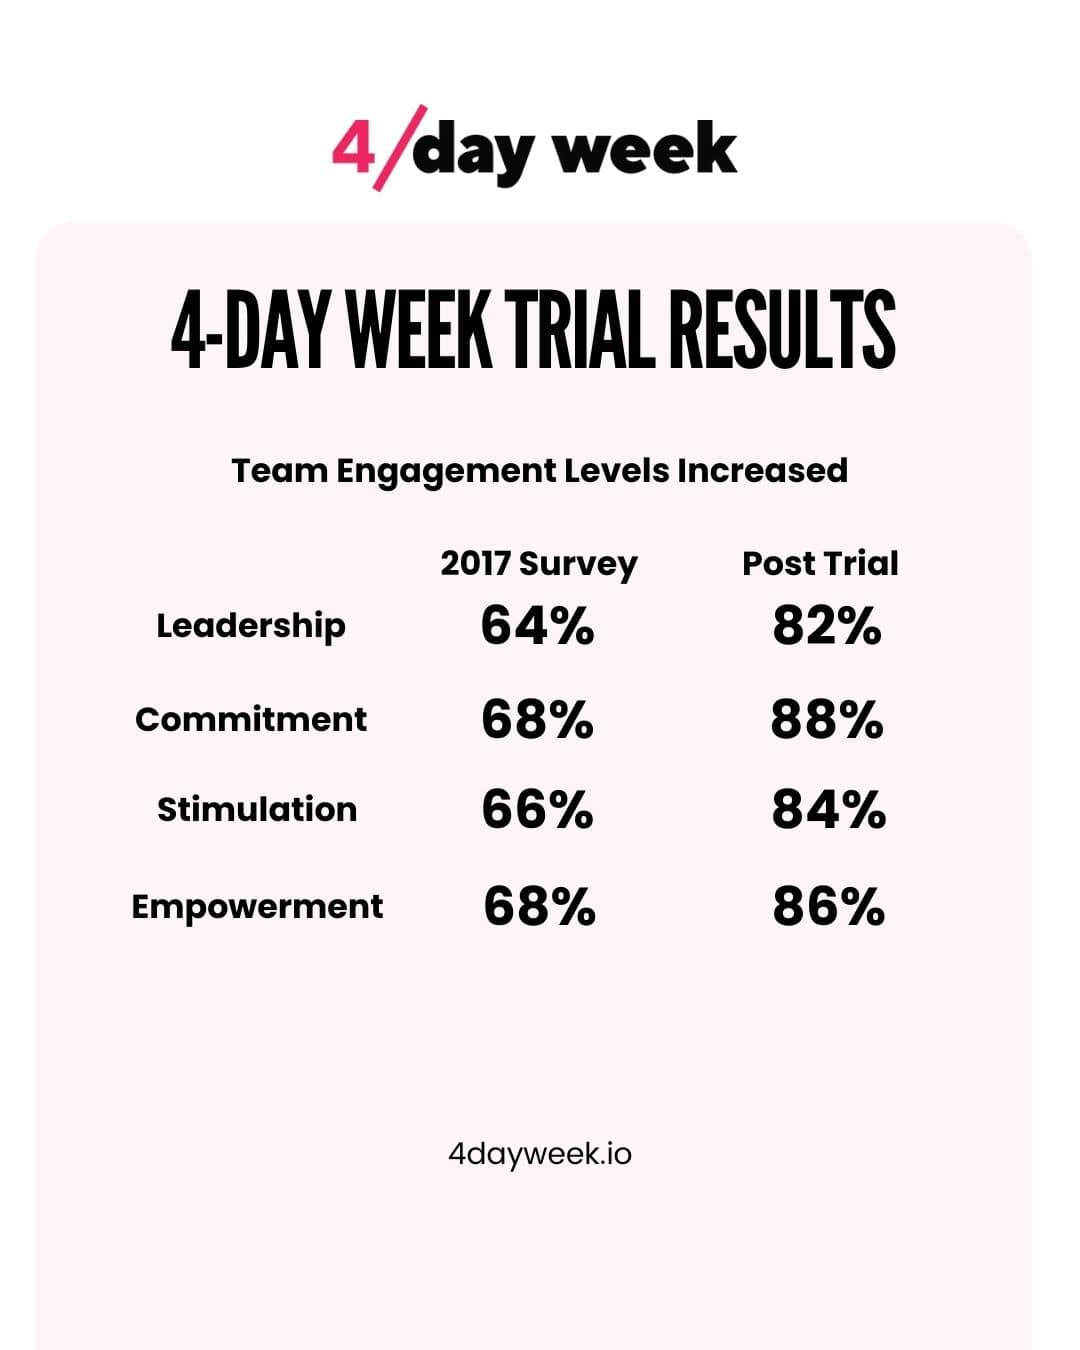 4-Day Workweek Trial - Boosting Team Engagement
